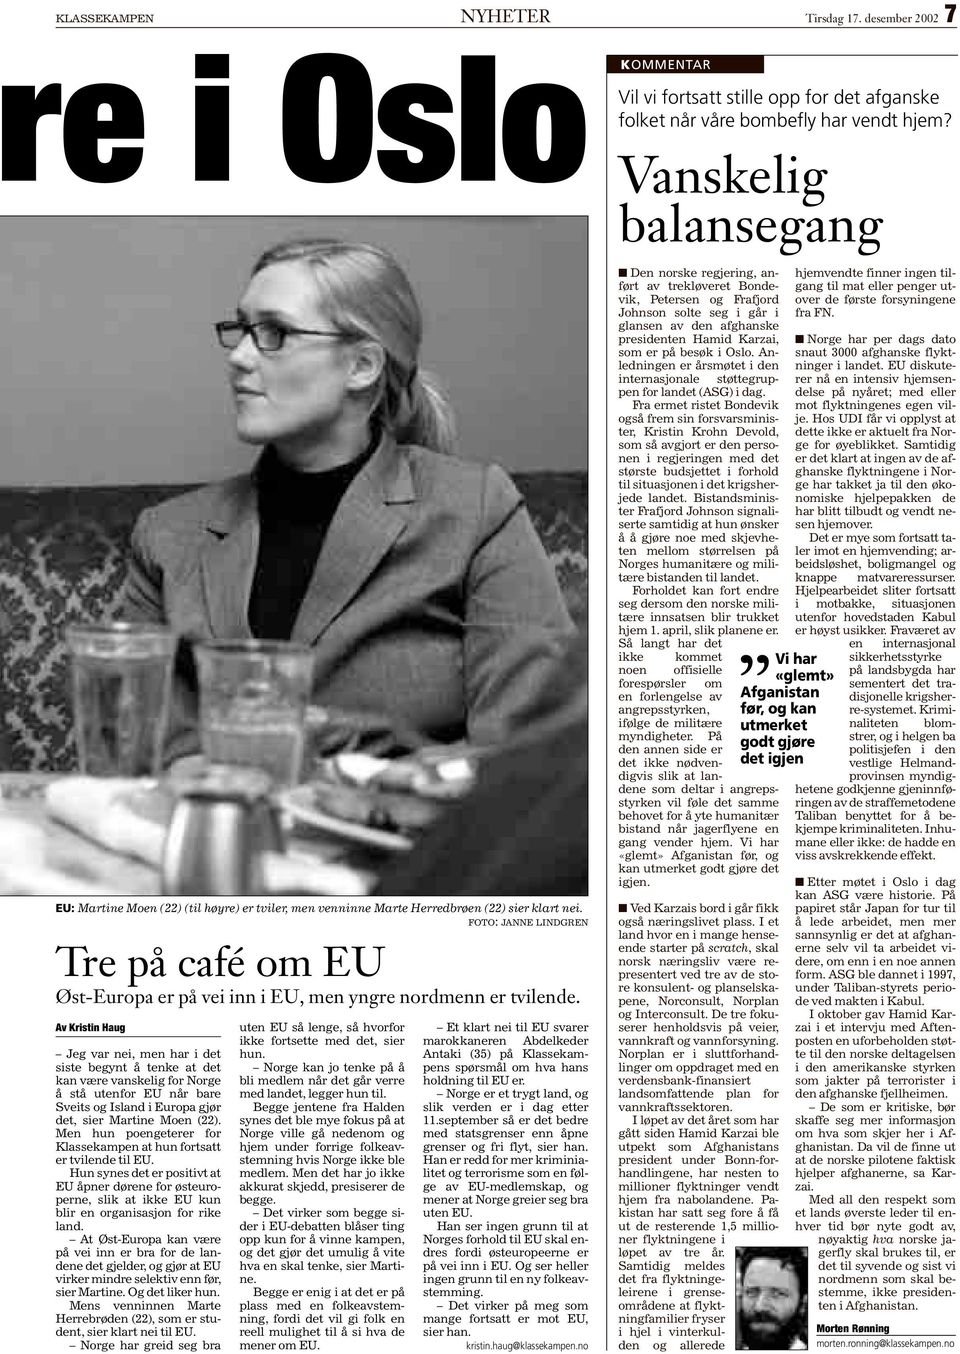 Av Kristin Haug Jeg var nei, men har i det siste begynt å tenke at det kan være vanskelig for Norge å stå utenfor EU når bare Sveits og Island i Europa gjør det, sier Martine Moen (22).